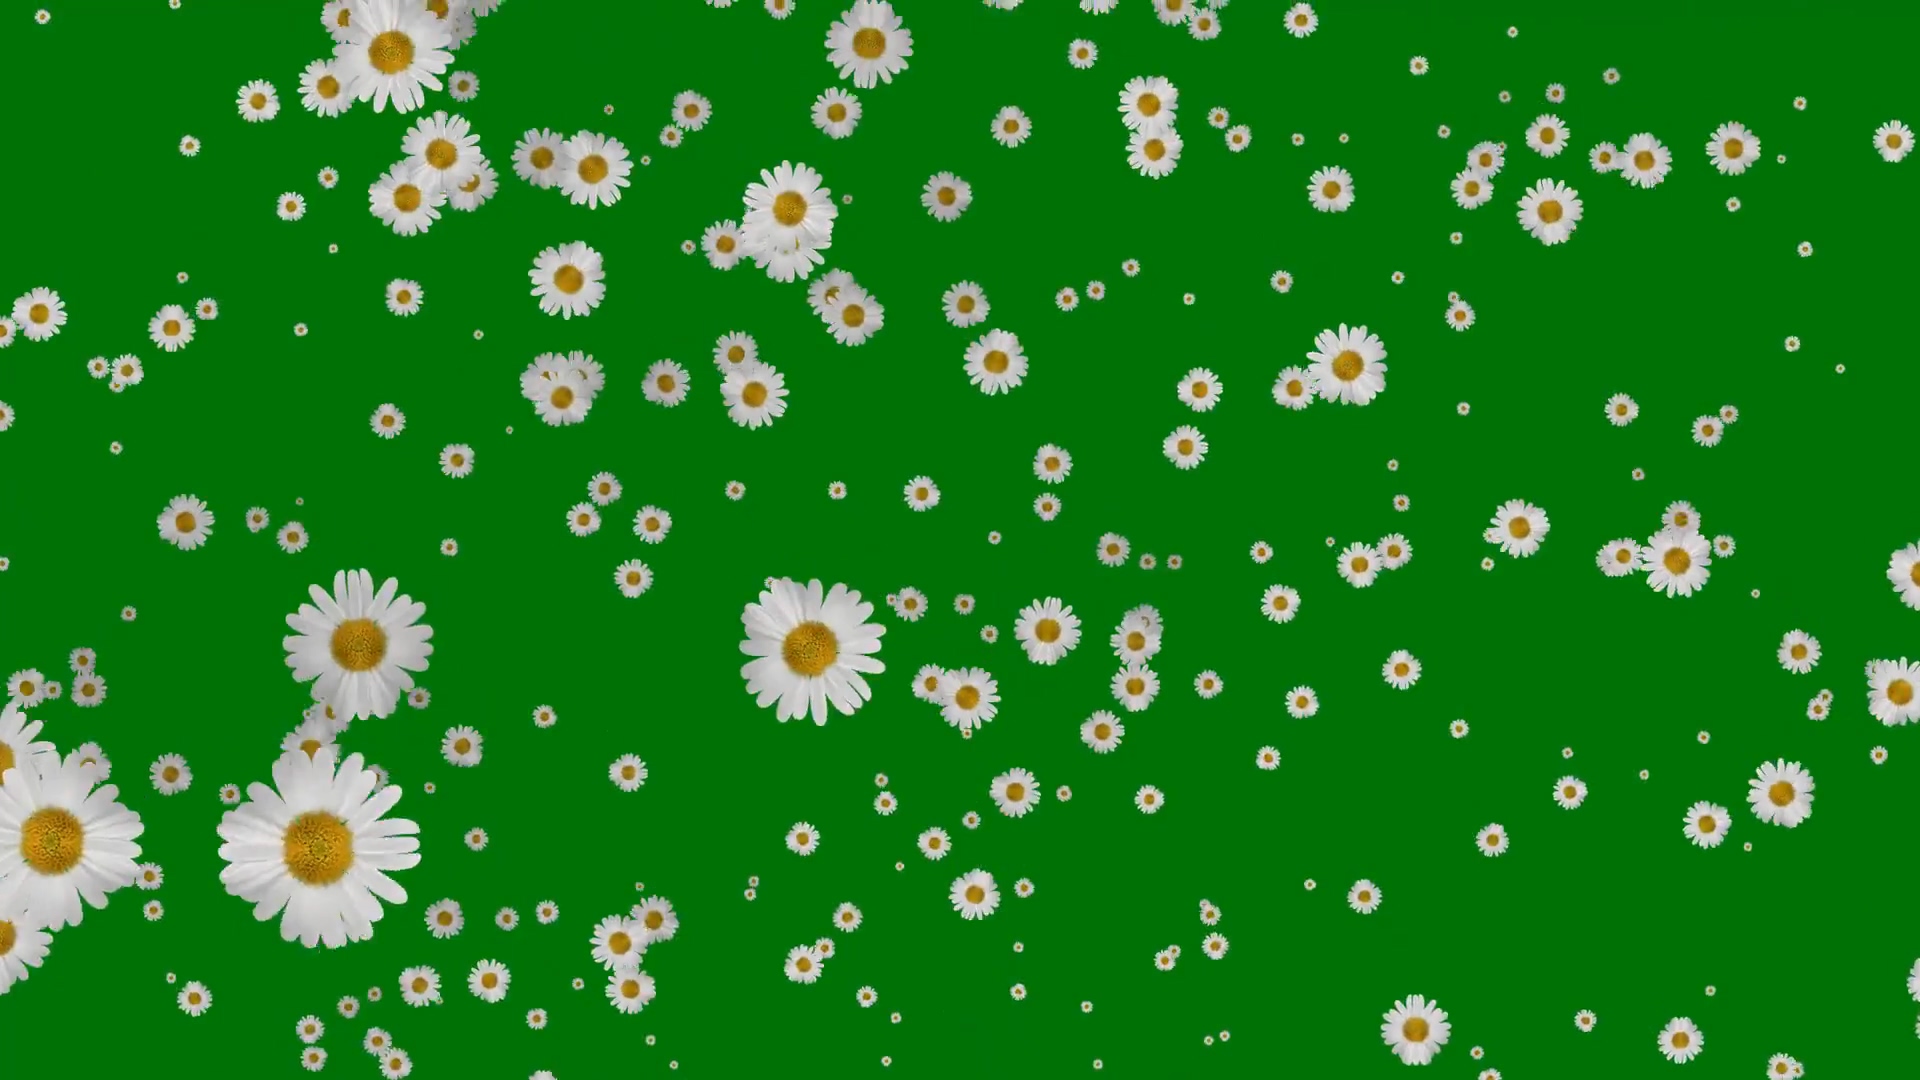 绿屏抠像飘落的白色菊花